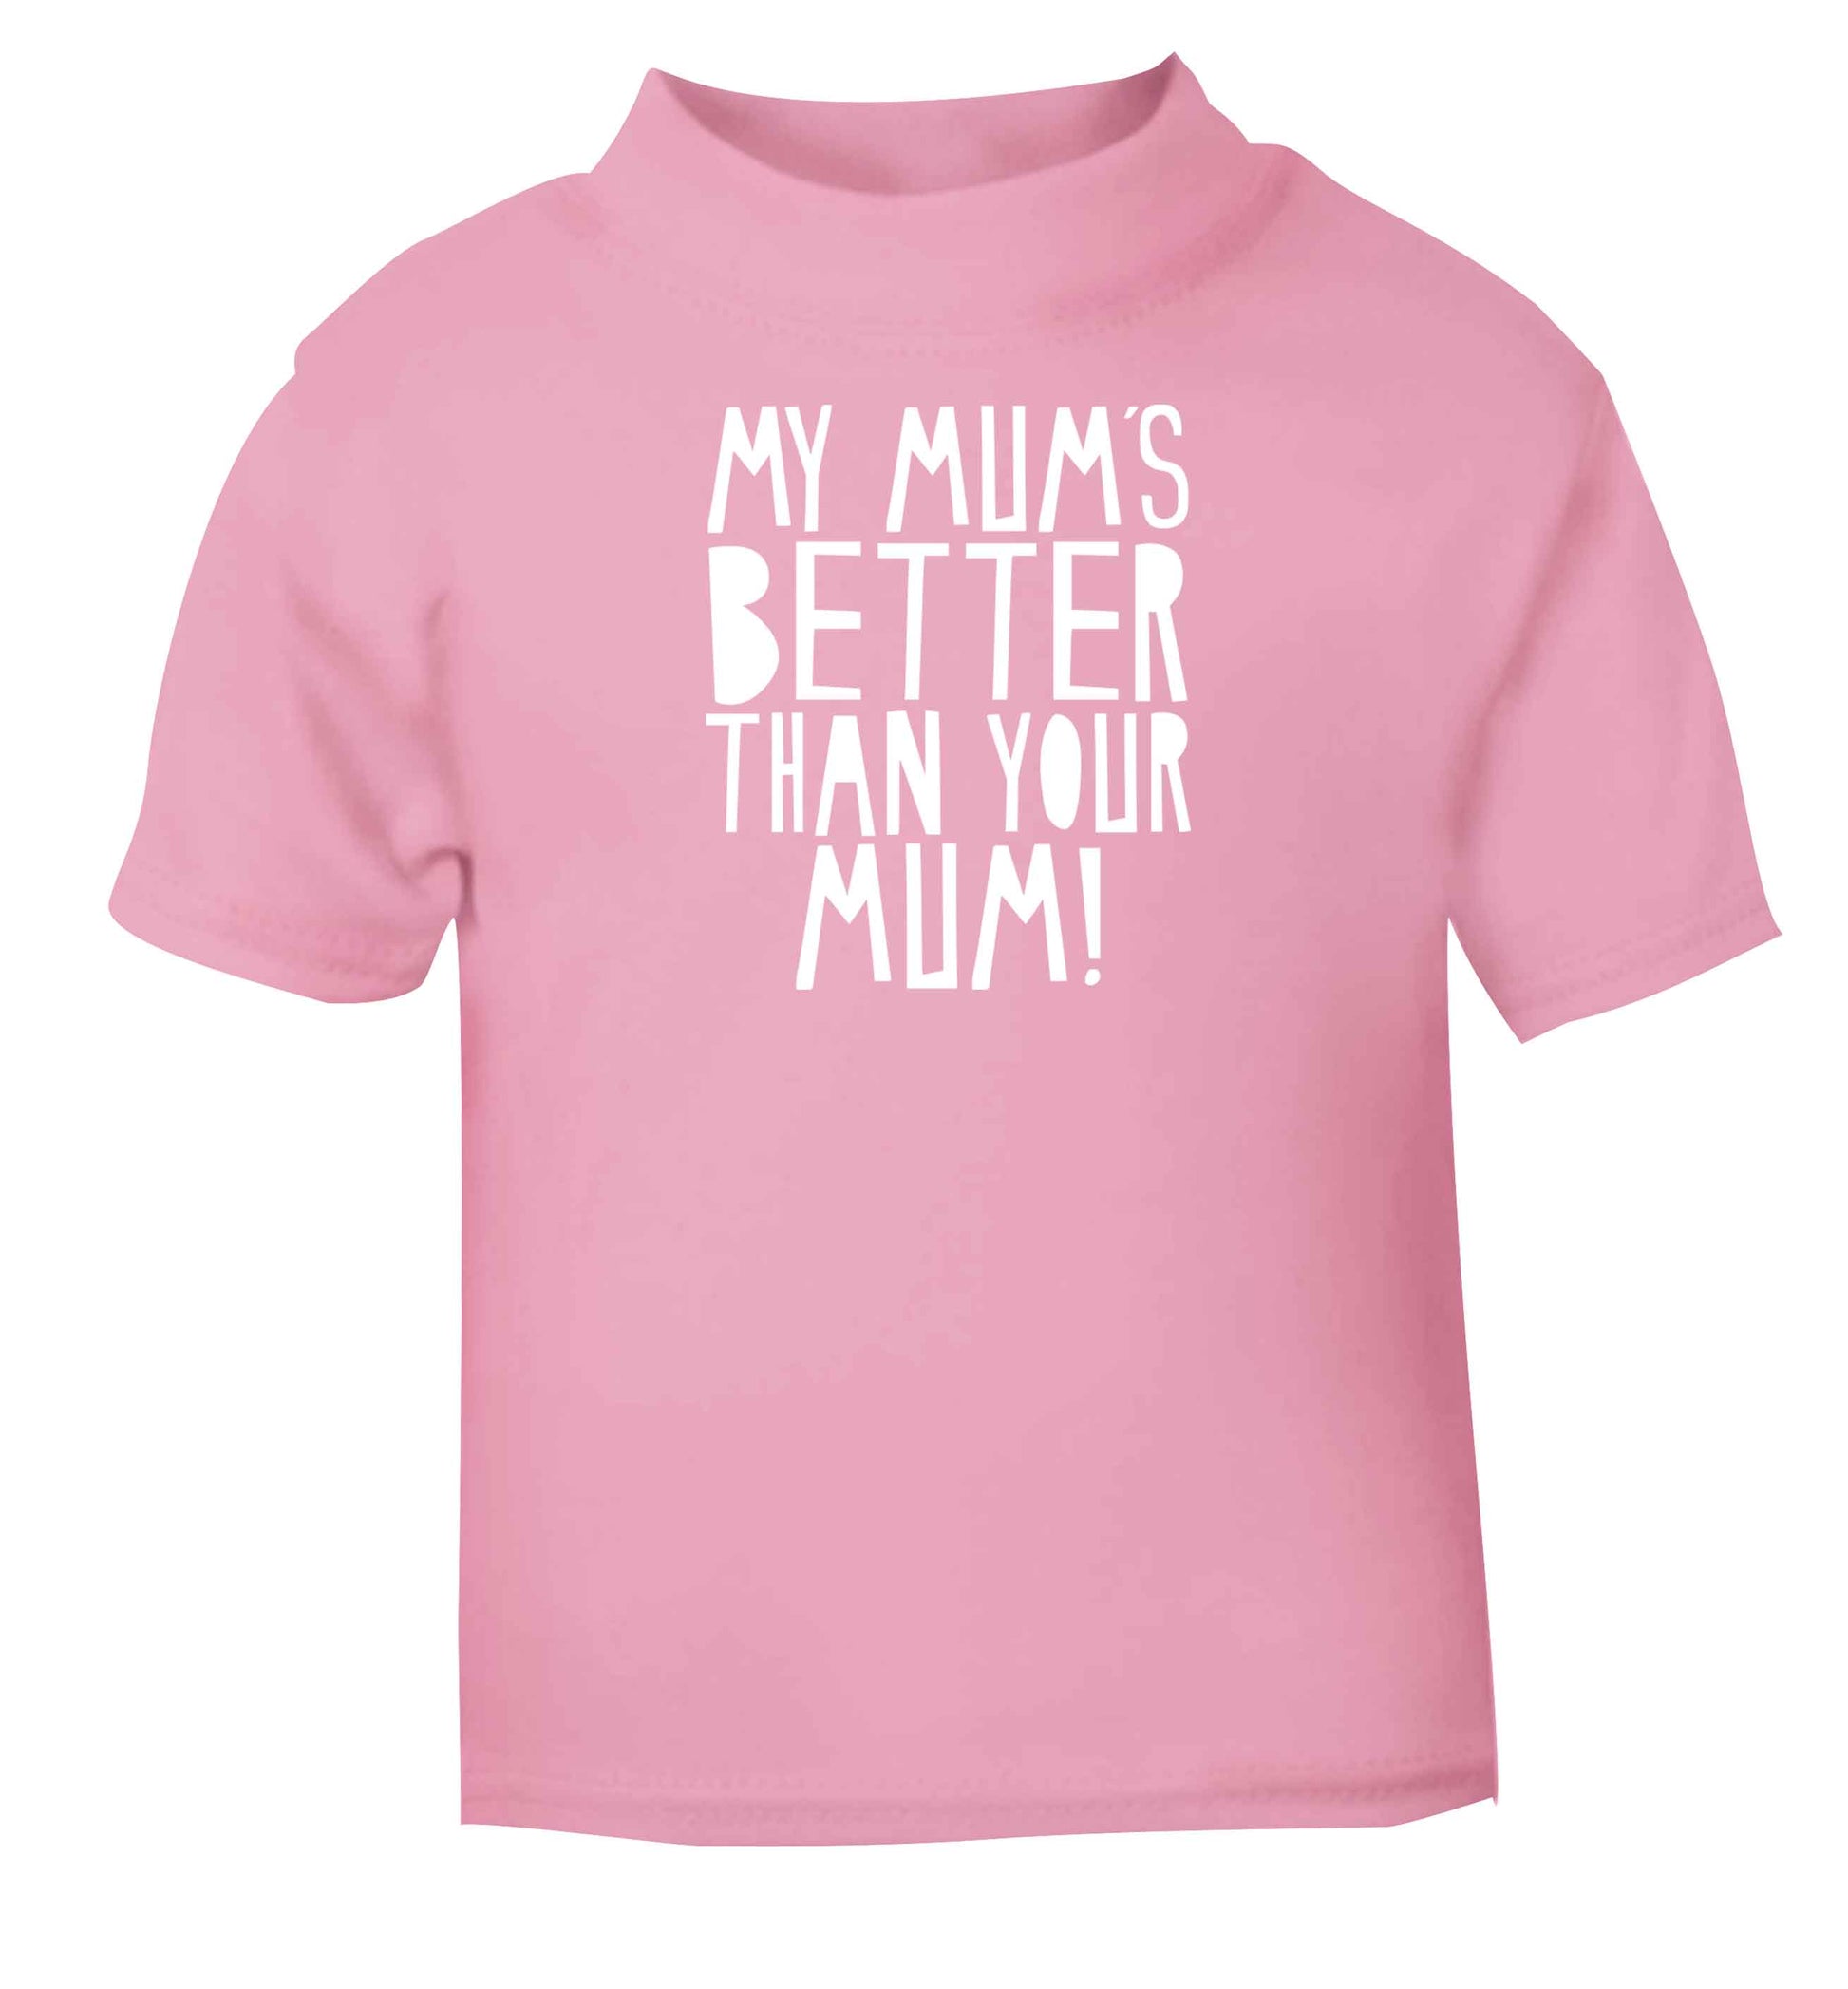 My mum's better than your mum Children's light pink Tshirt 12-13 Years